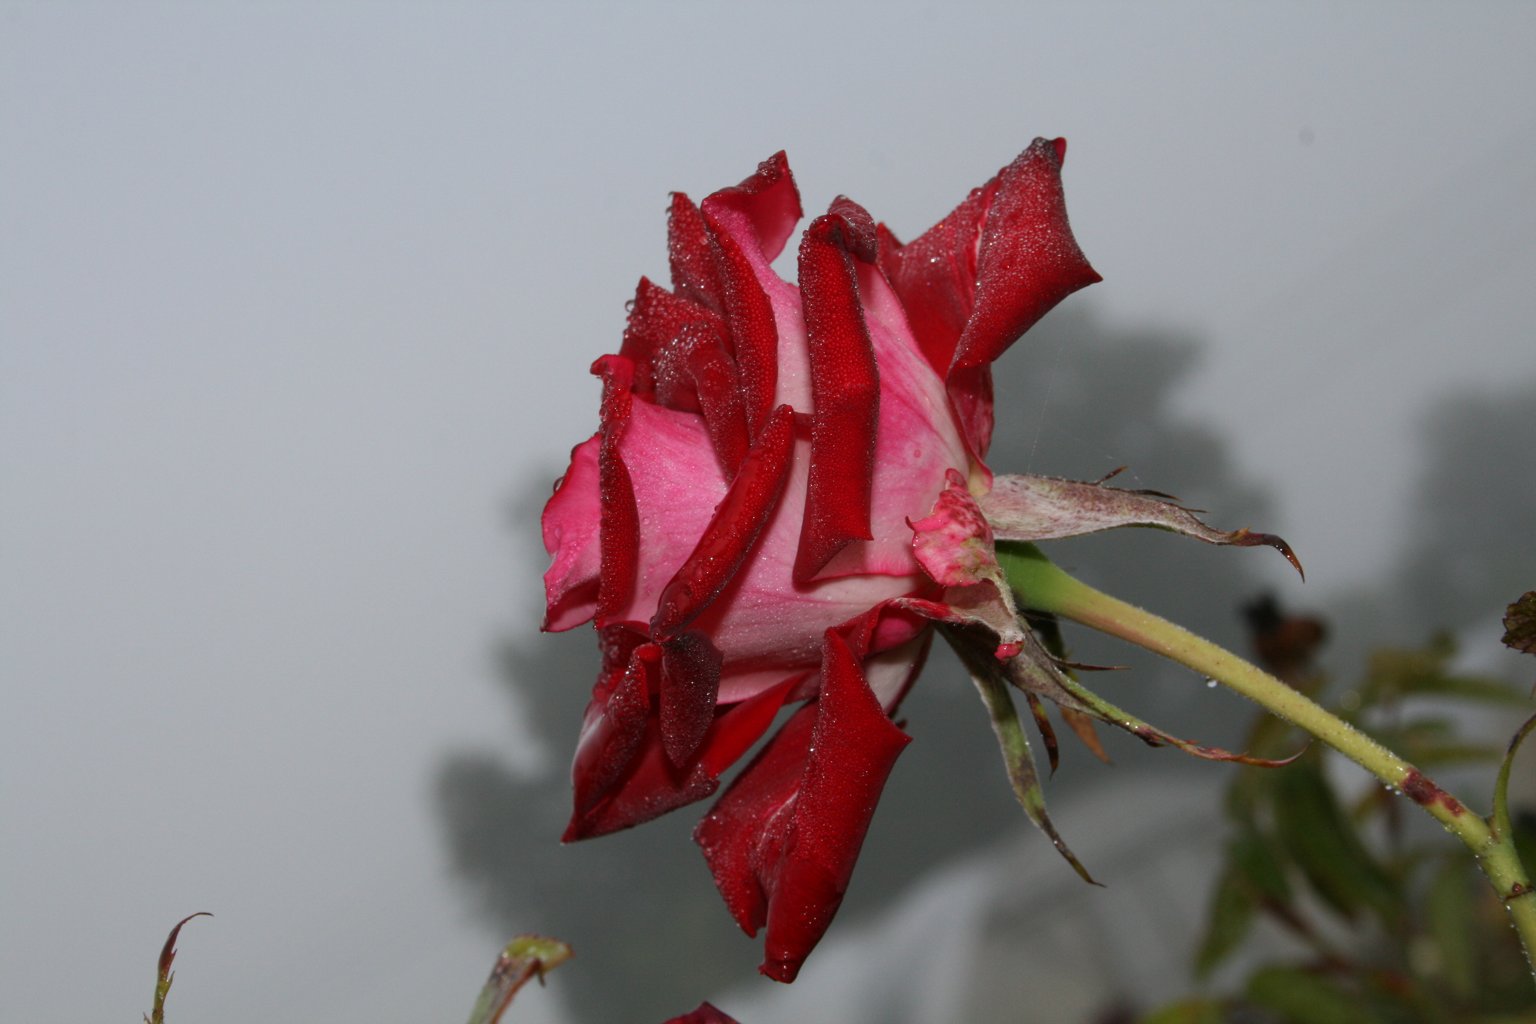 Róża mix / Rosa mix